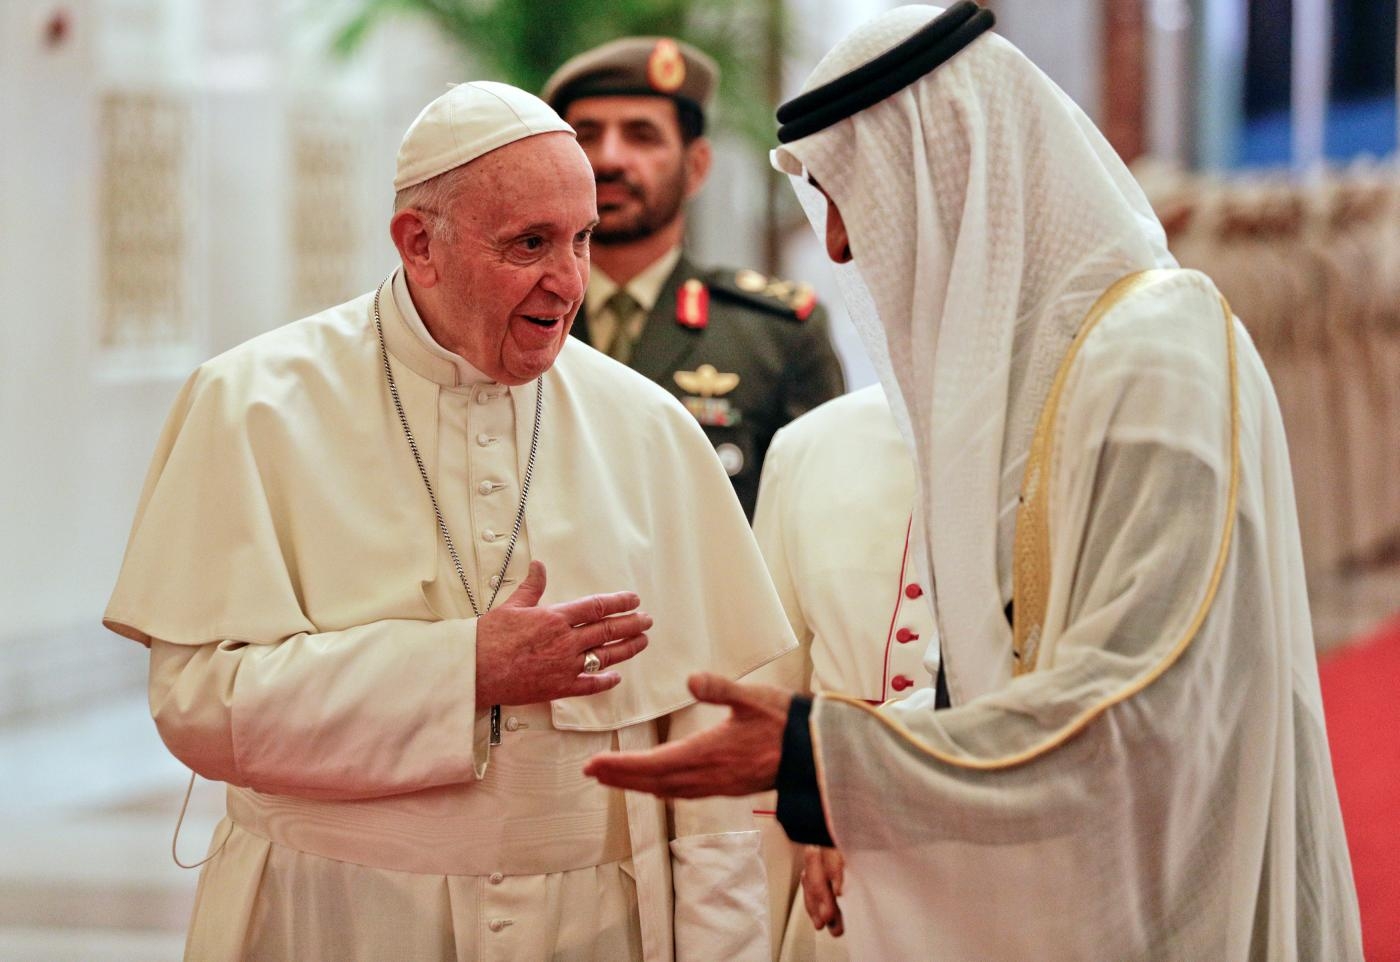 Le pape François (à gauche) est accueilli par le dirigeant de Dubaï, le cheikh Mohammed ben Rachid al-Maktoum (à droite), aux côtés du prince héritier d’Abou Dabi Mohammed ben Zayed al-Nahyane (deuxième à droite) à son arrivée au palais présidentiel d’Abou Dabi, capitale des Émirats, le 4 février 2019 (AFP)